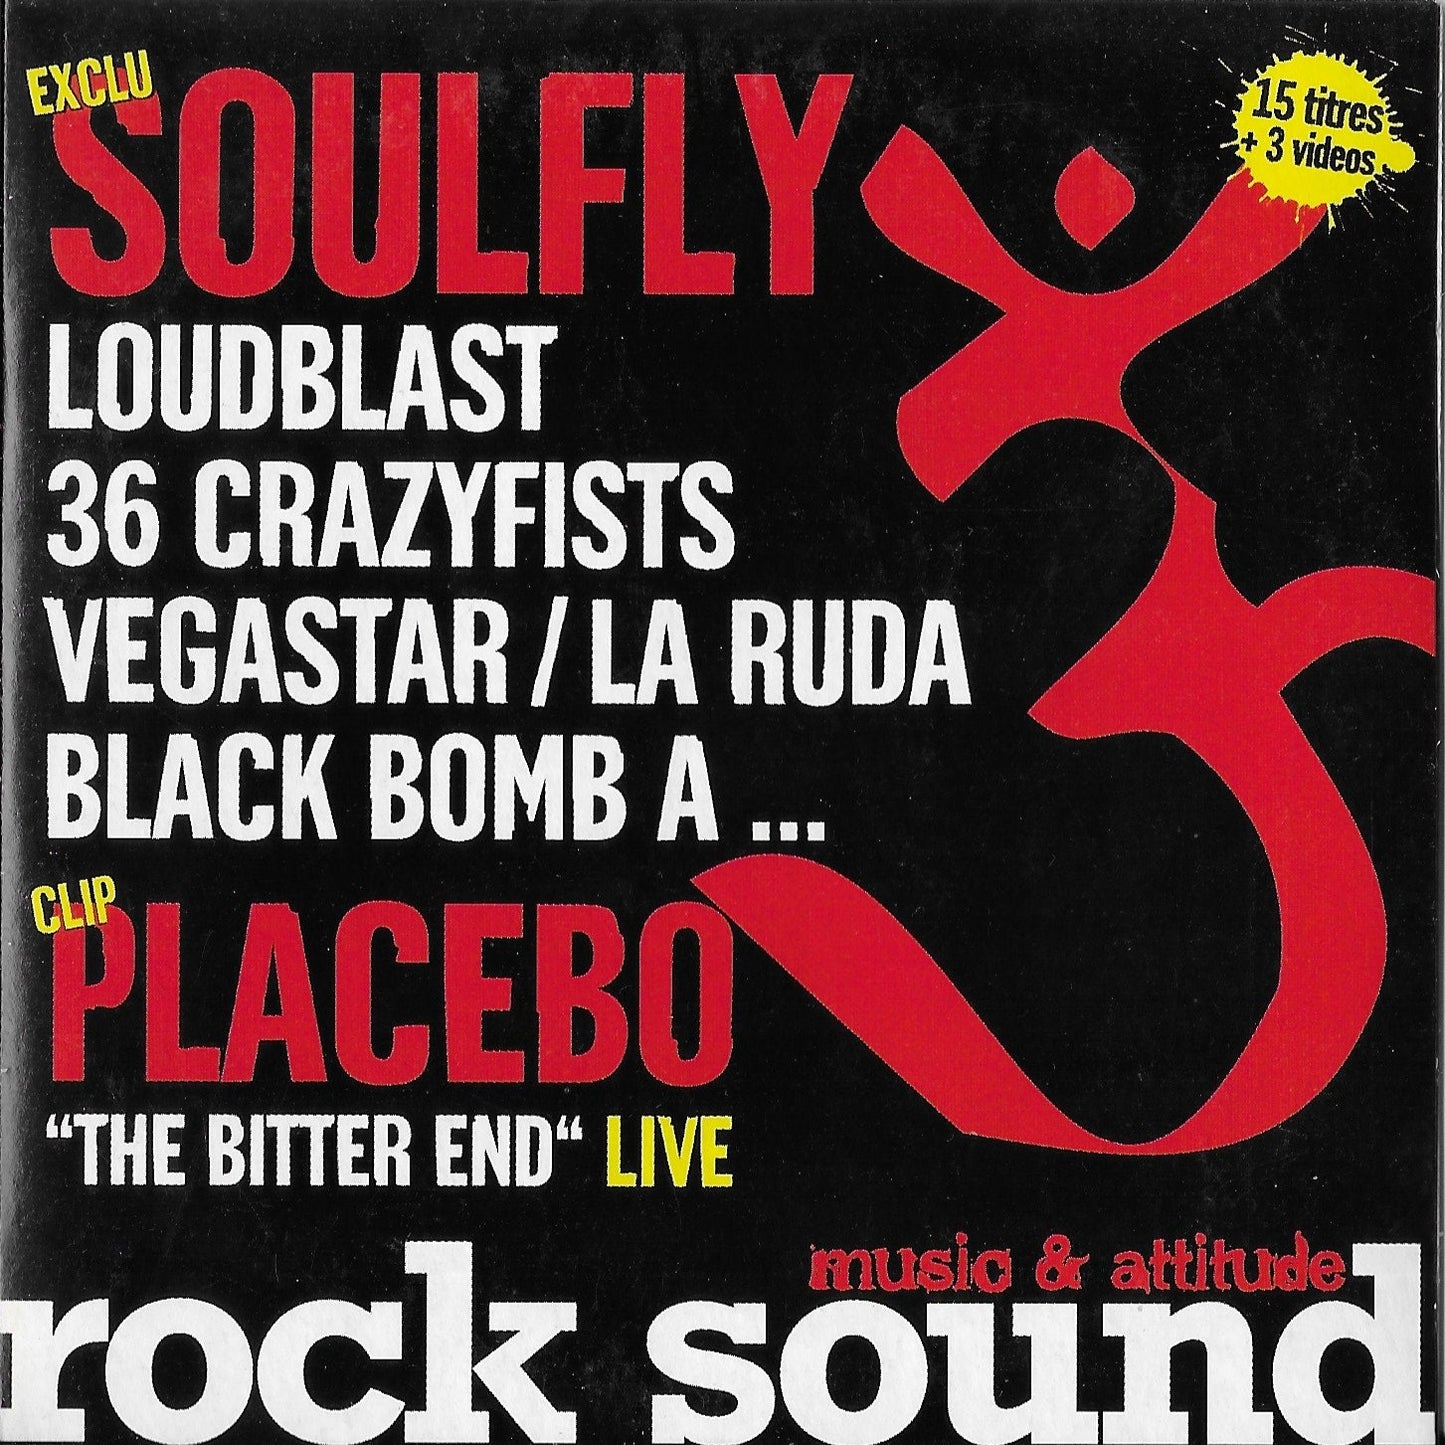 ROCK SOUND Volume 84